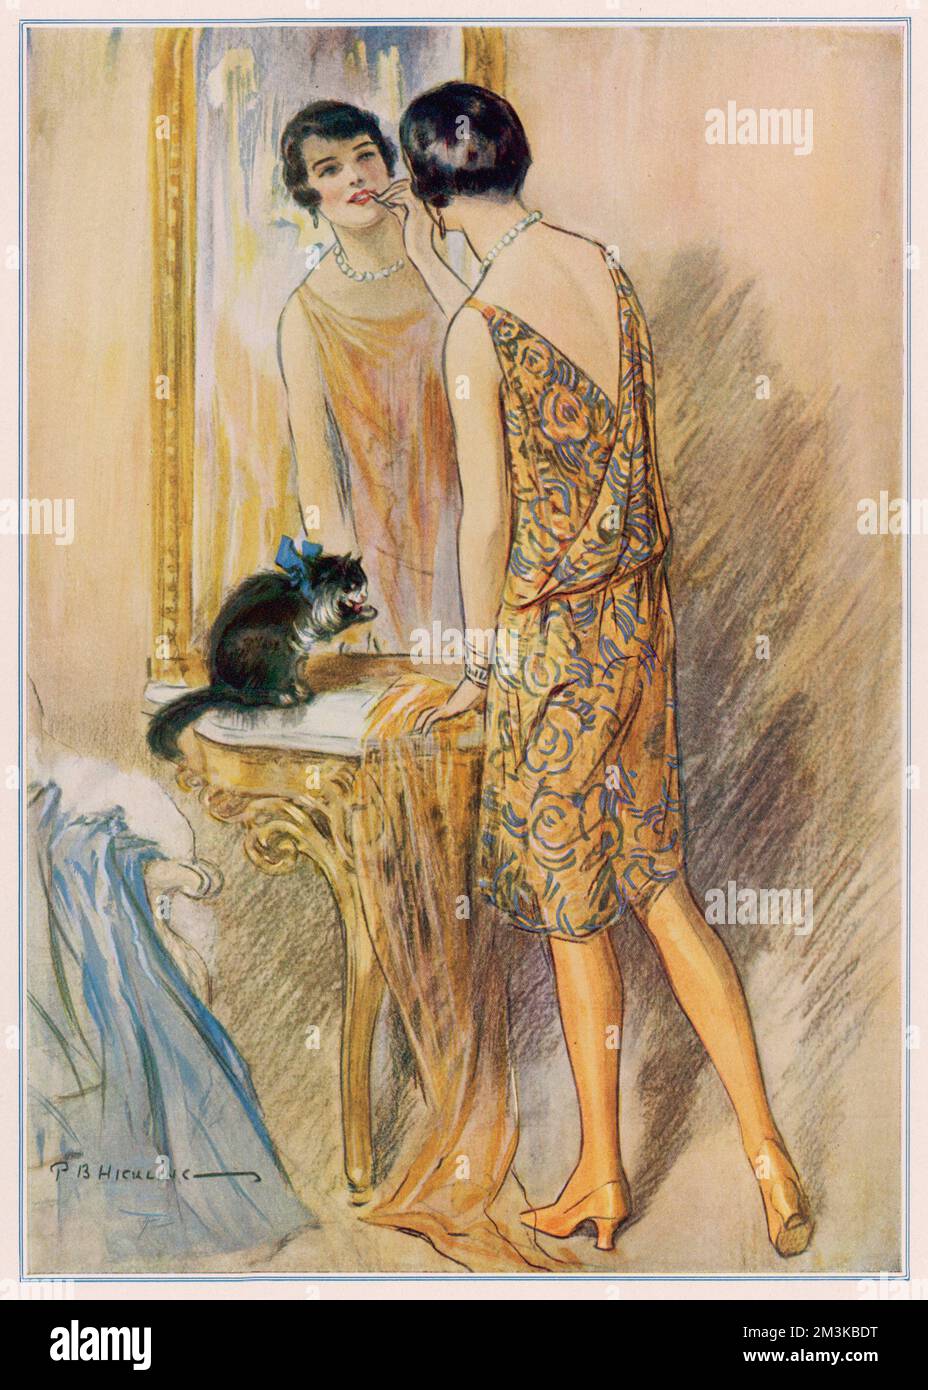 Una típica niña de 1920s flapper, usando un vestido corto, medias amarillas  y con el pelo acanalado, shingled, aplica su lápiz labial en el espejo  observado por un gato bastante diffident. Fecha